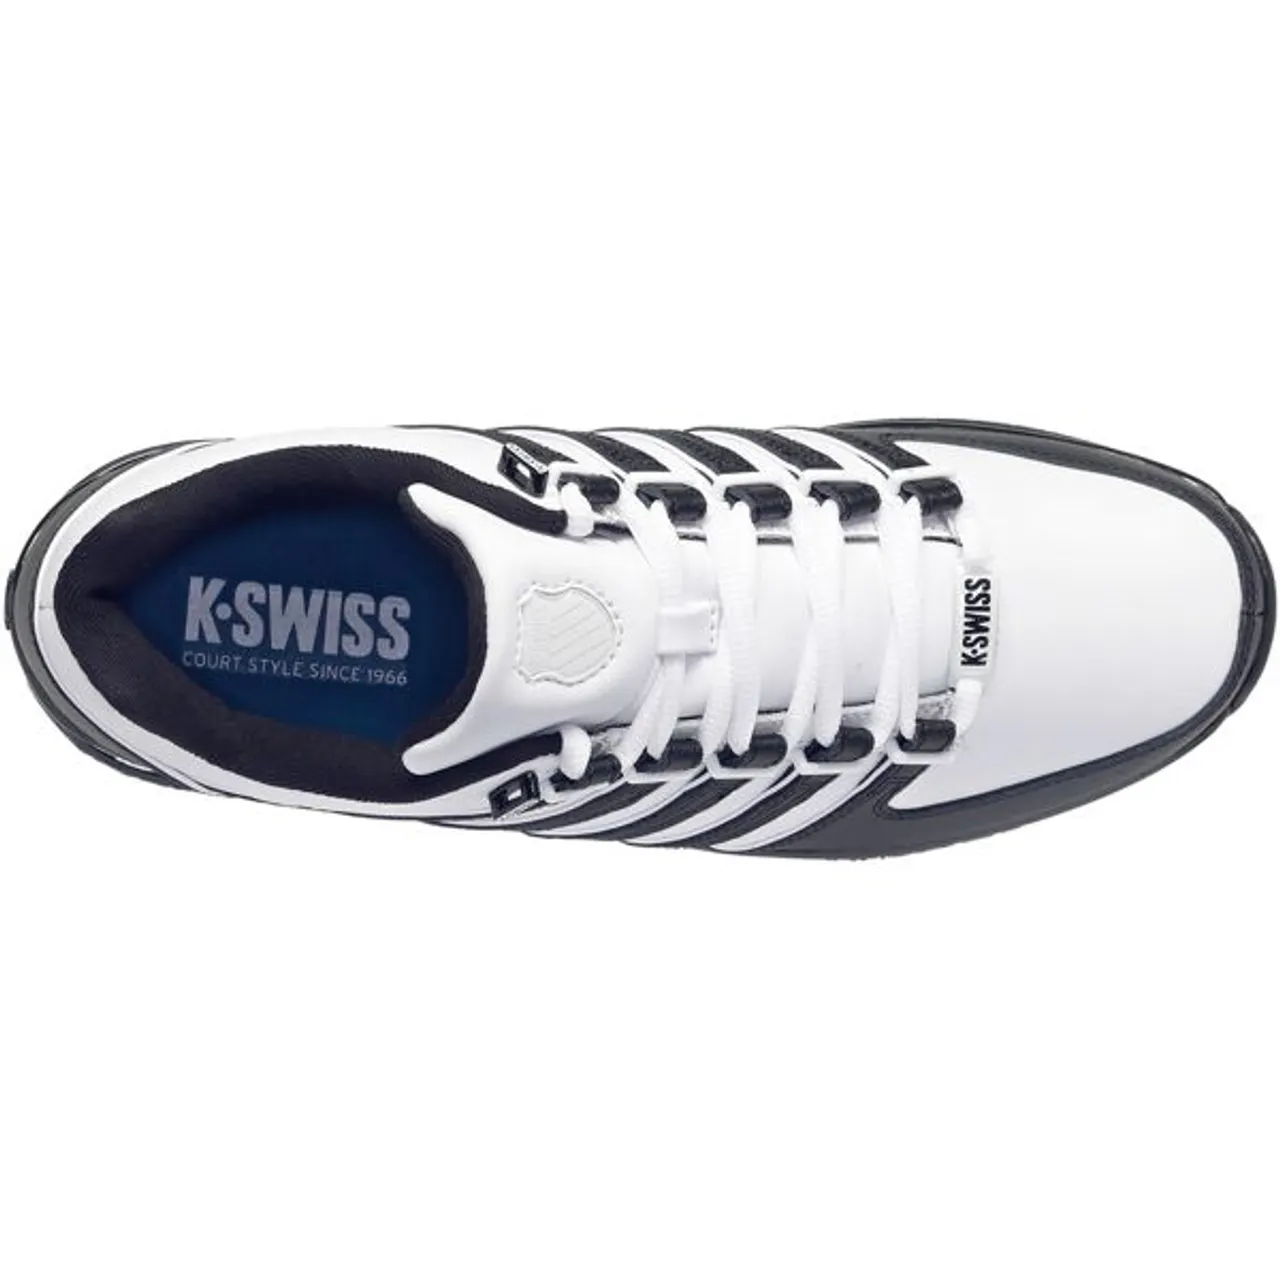 Sneaker K-SWISS "Rinzler" Gr. 45, schwarz-weiß (weiß, schwarz) Schuhe Schnürhalbschuhe